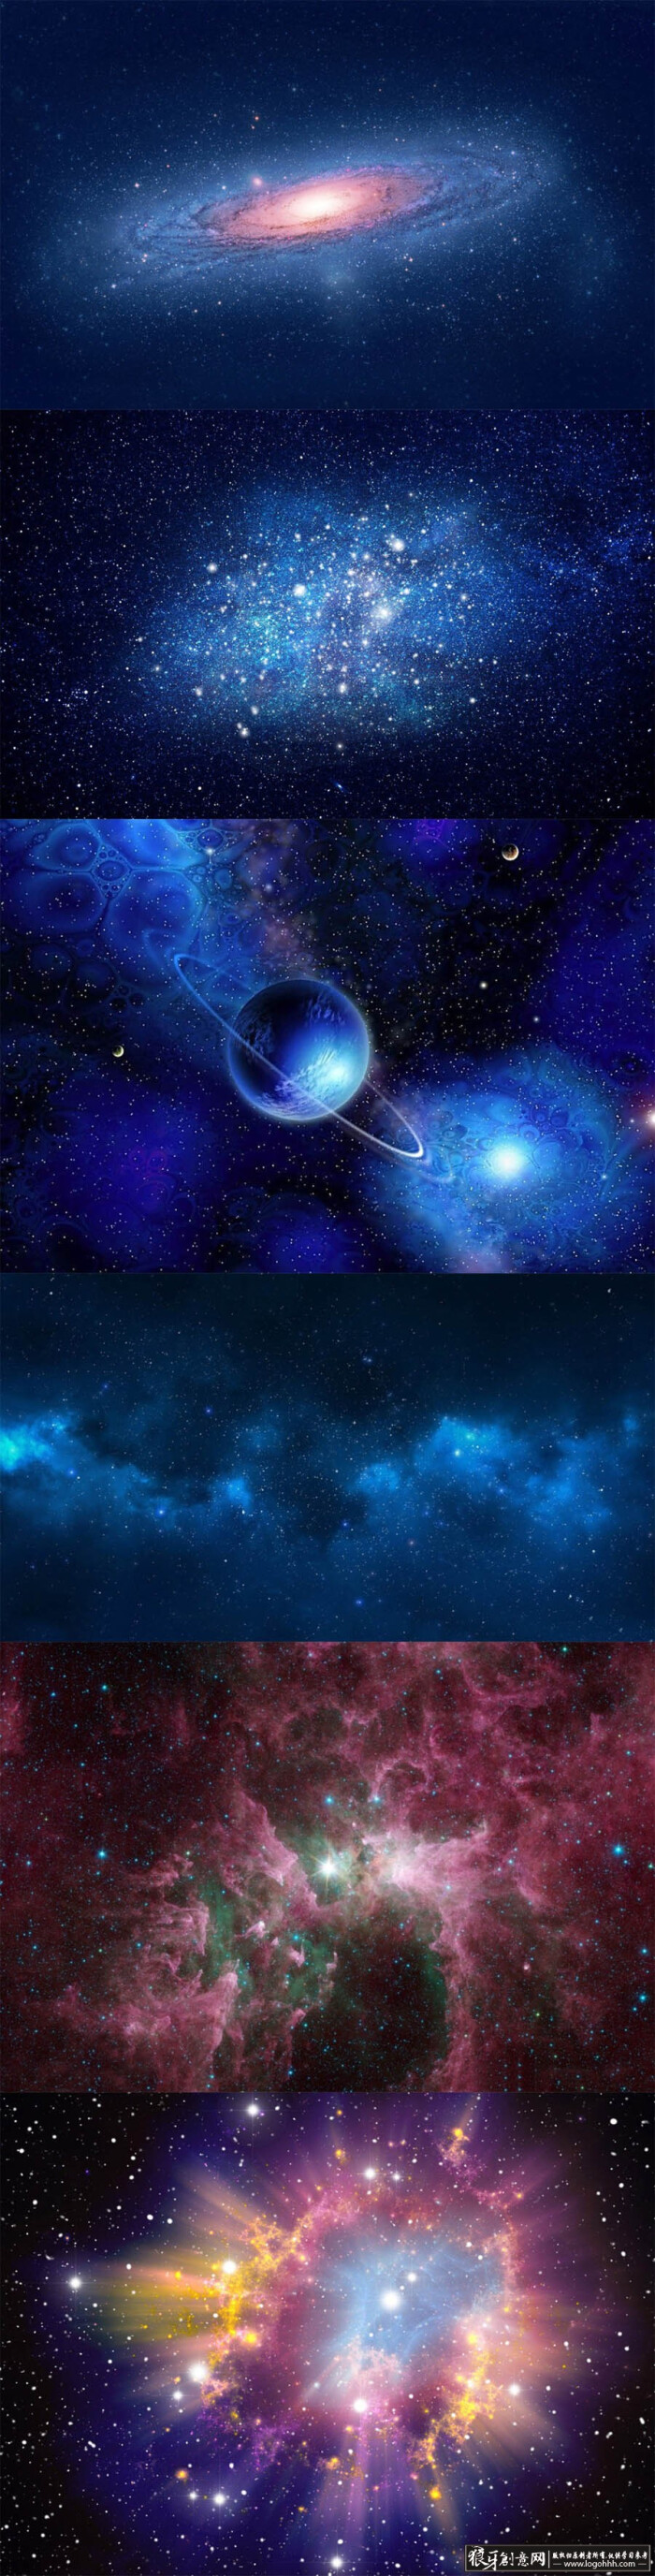 背景素材 宇宙星空背景图 太空背景 飞船行星 极光星光 科学科技背景